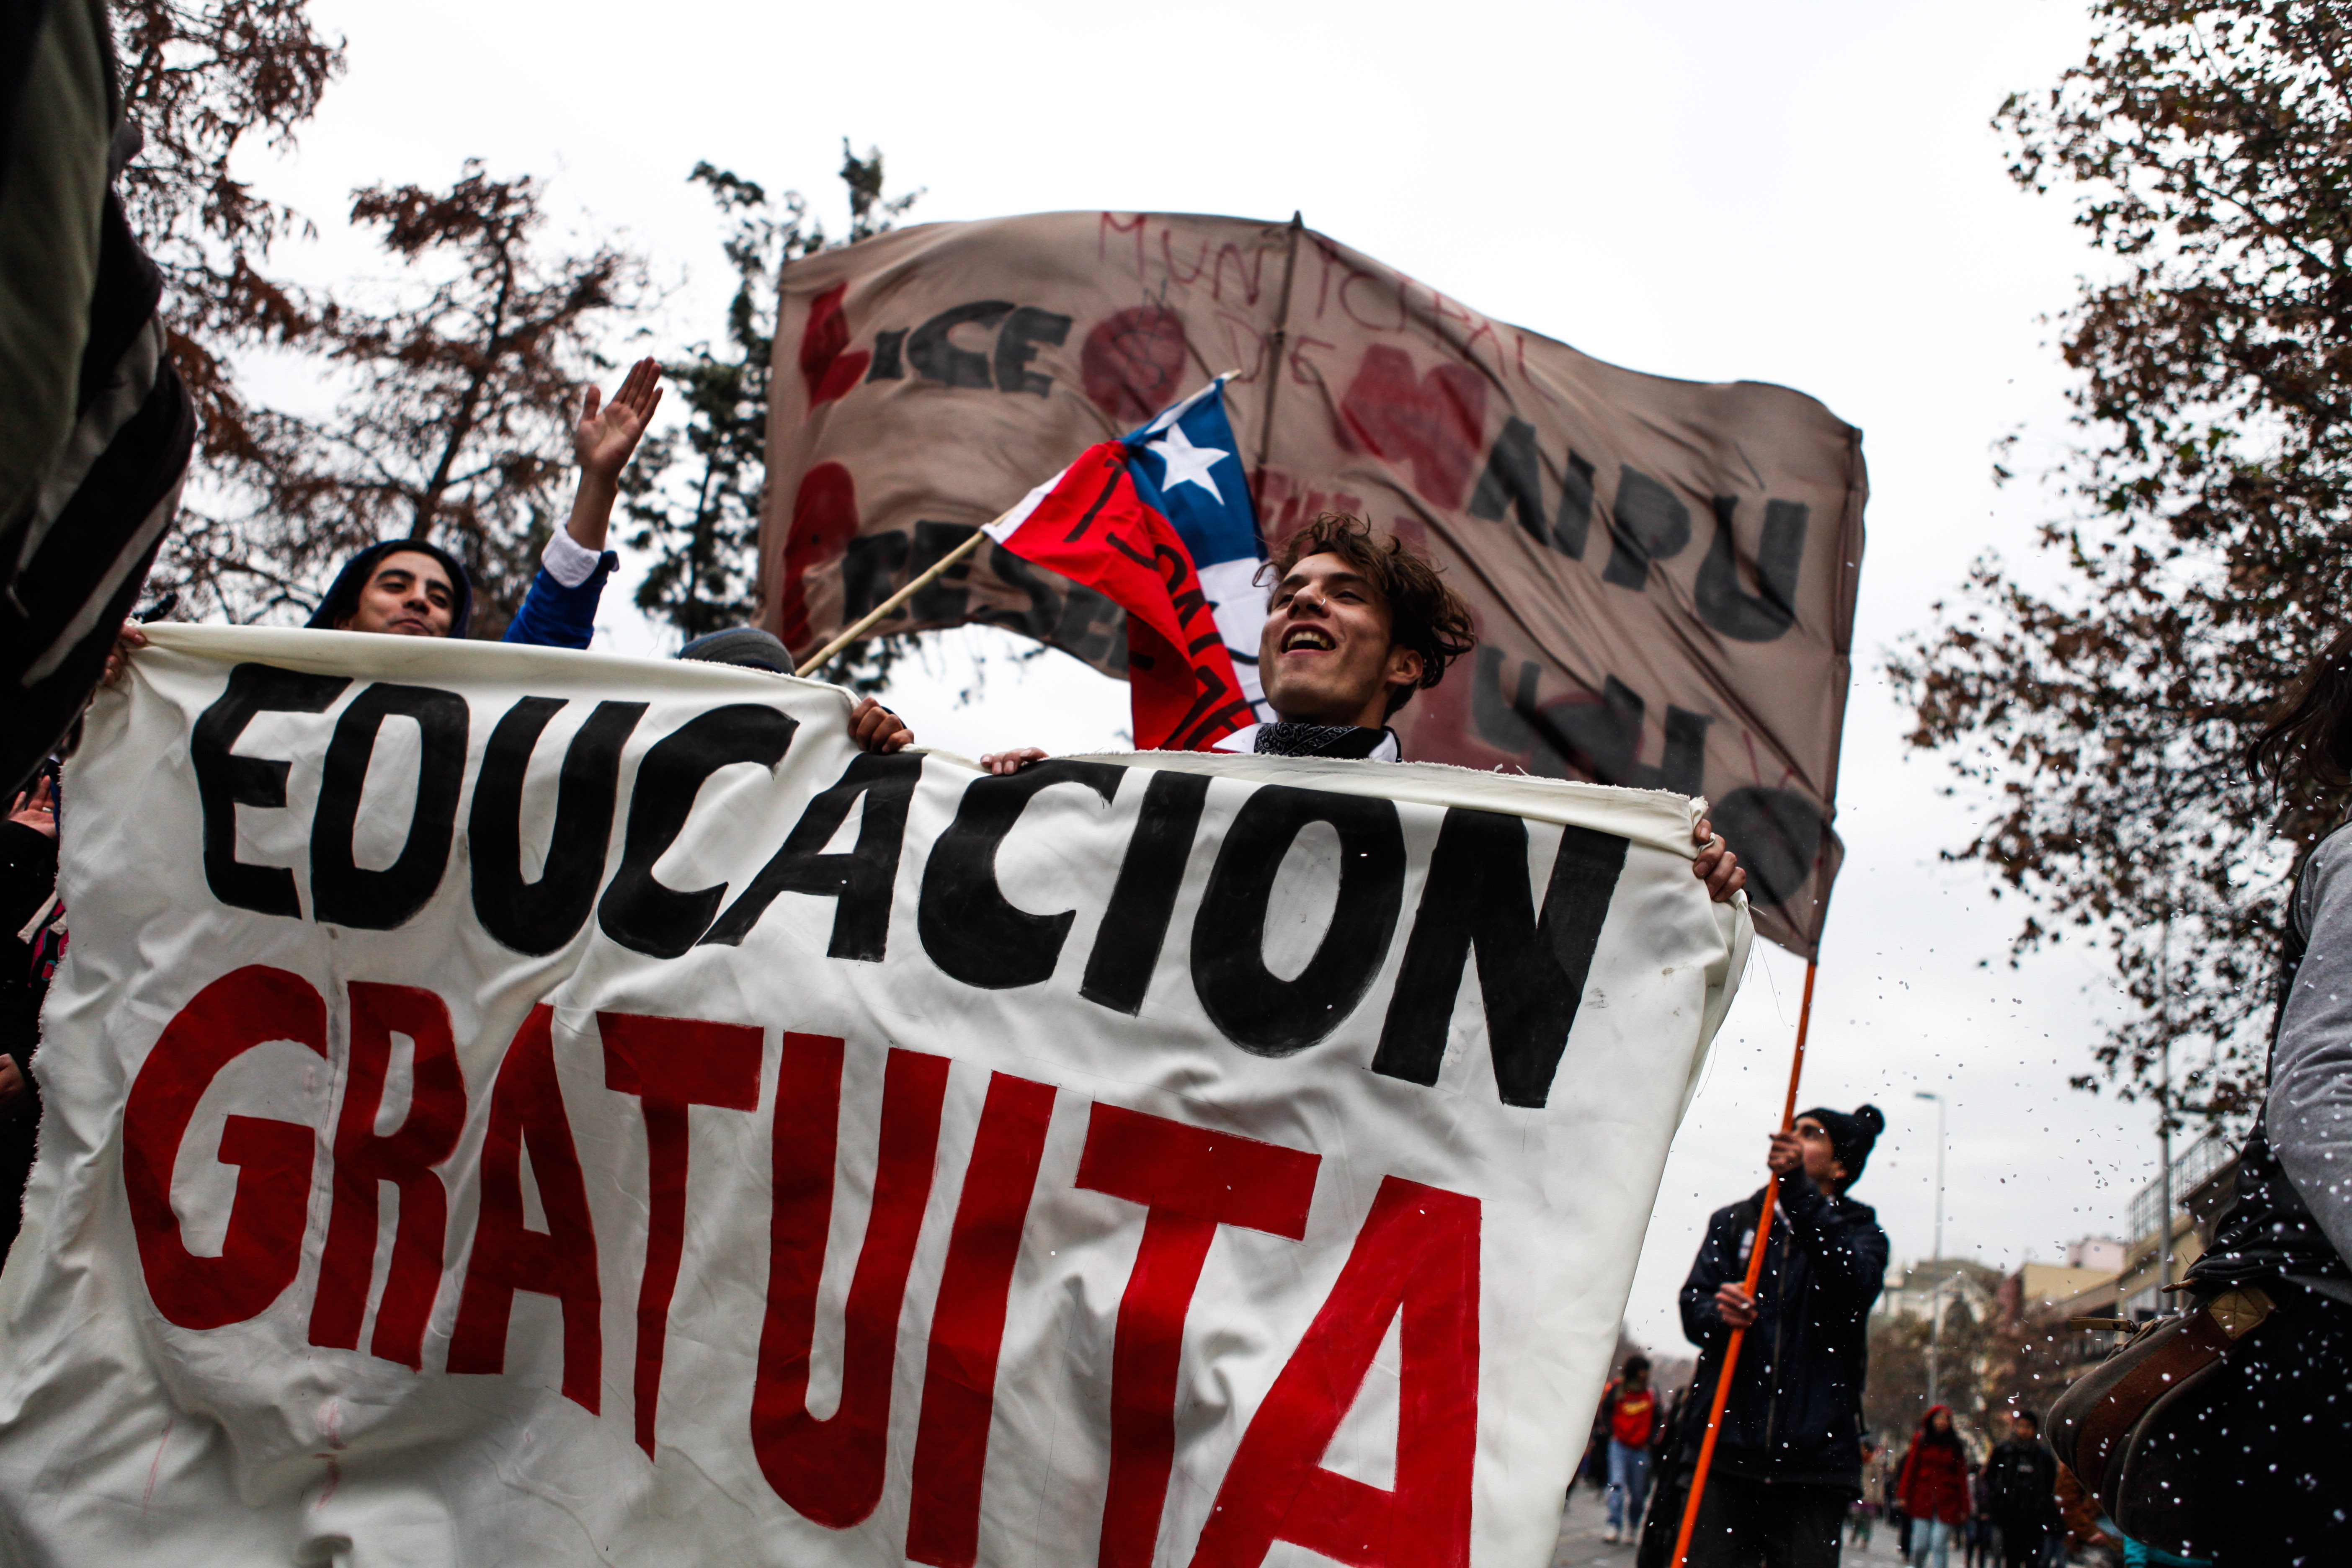 Students will banner Eduacion Gratuita